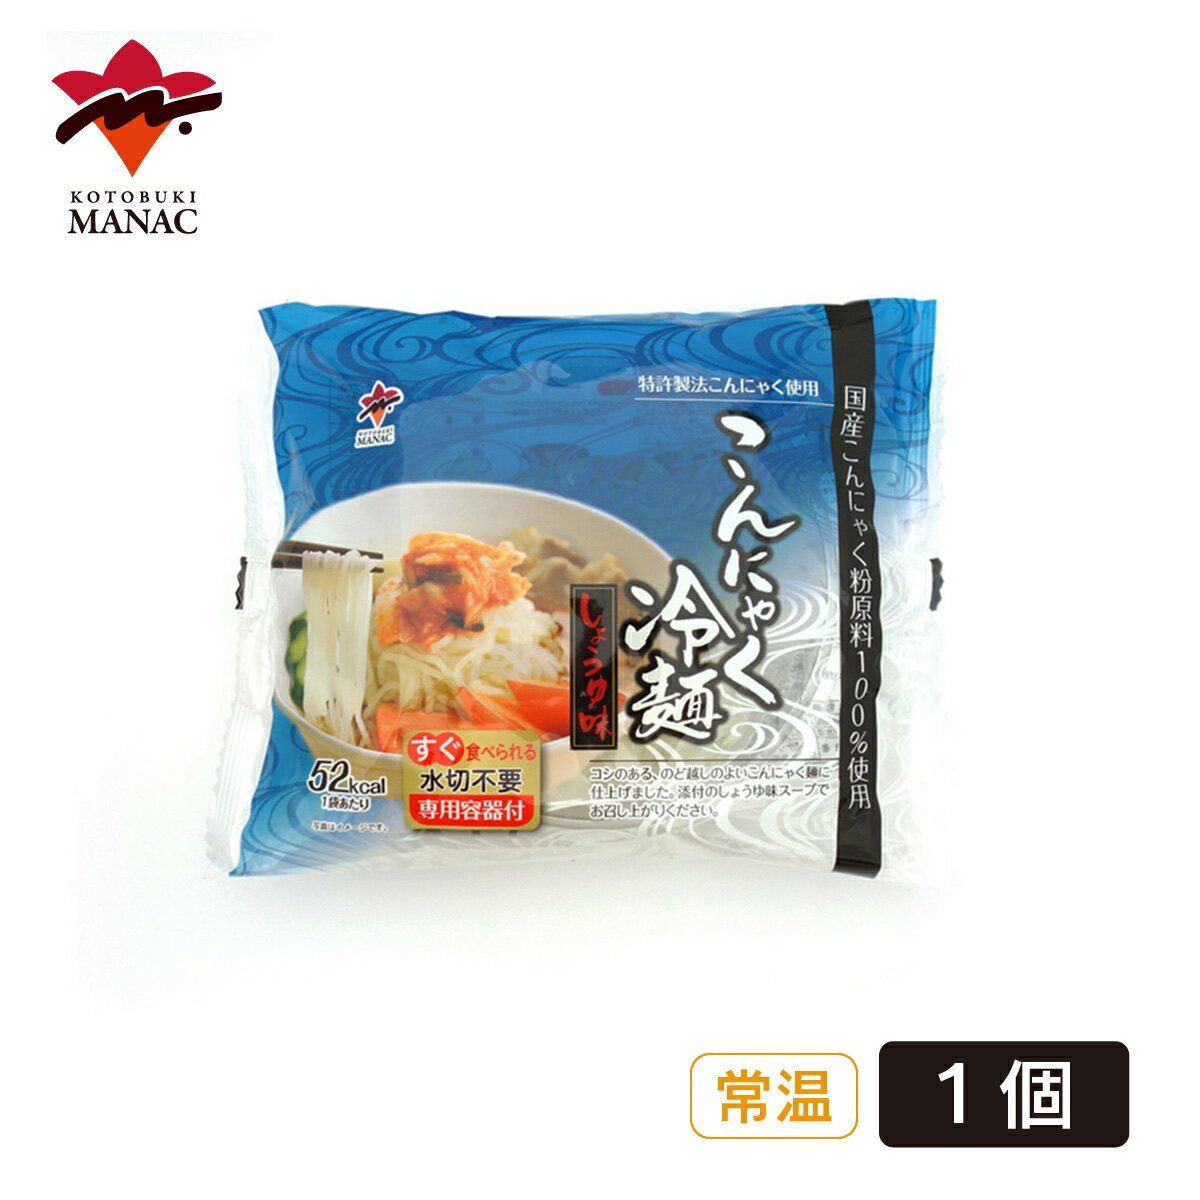 こんにゃく冷麺 しょうゆ味 1個 蒟蒻 寿マナック